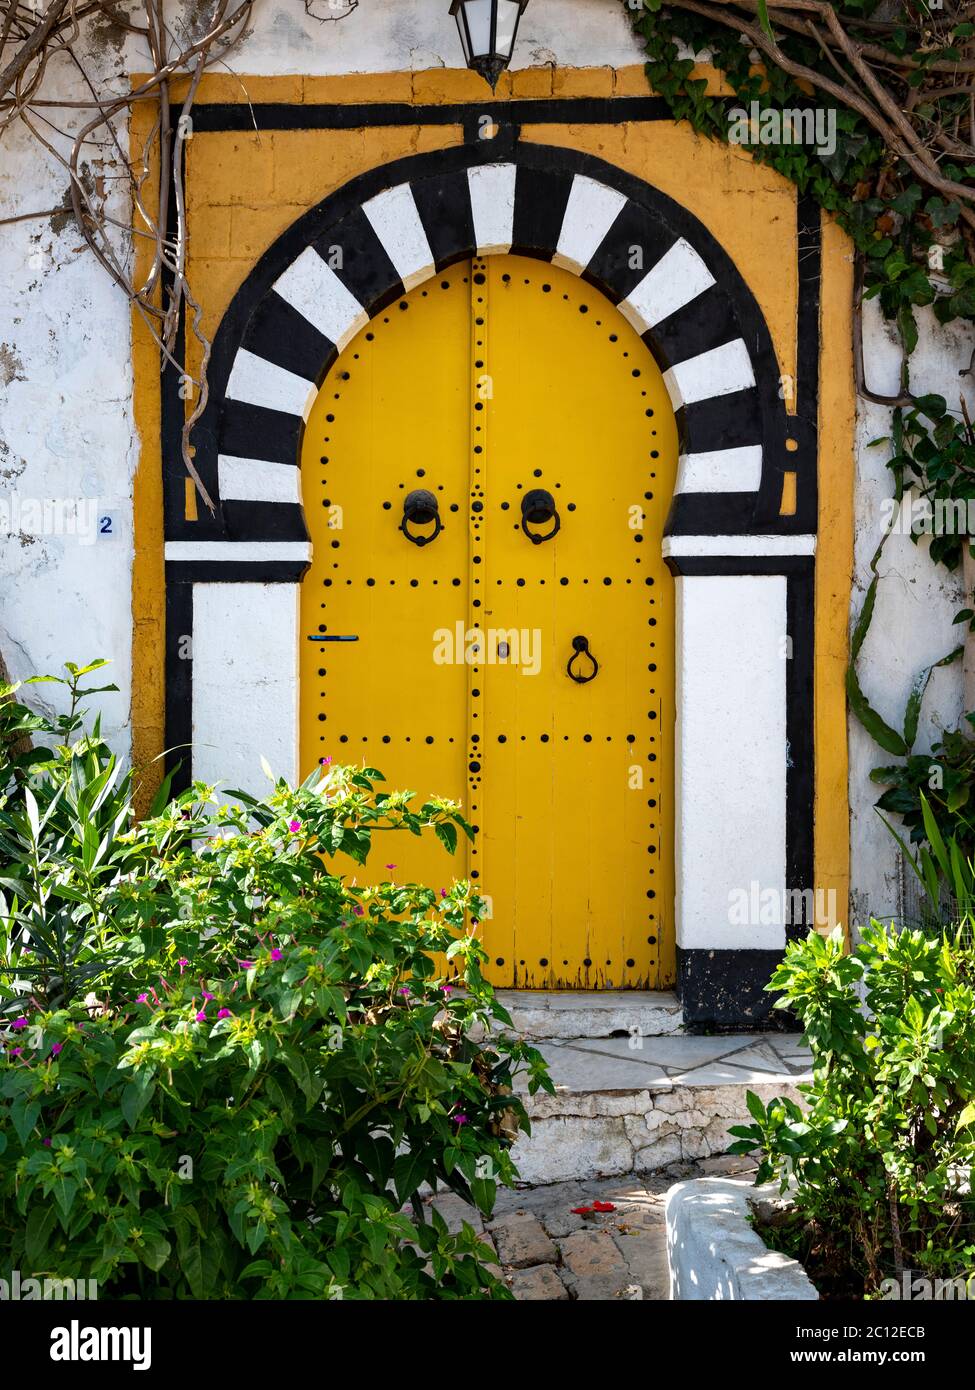 Aufwendig dekorierte Tür eines traditionellen Hauses in Sidi bou Said, Tunesien, im maurischen Stil mit Bogen und bemalten Verzierungen Stockfoto